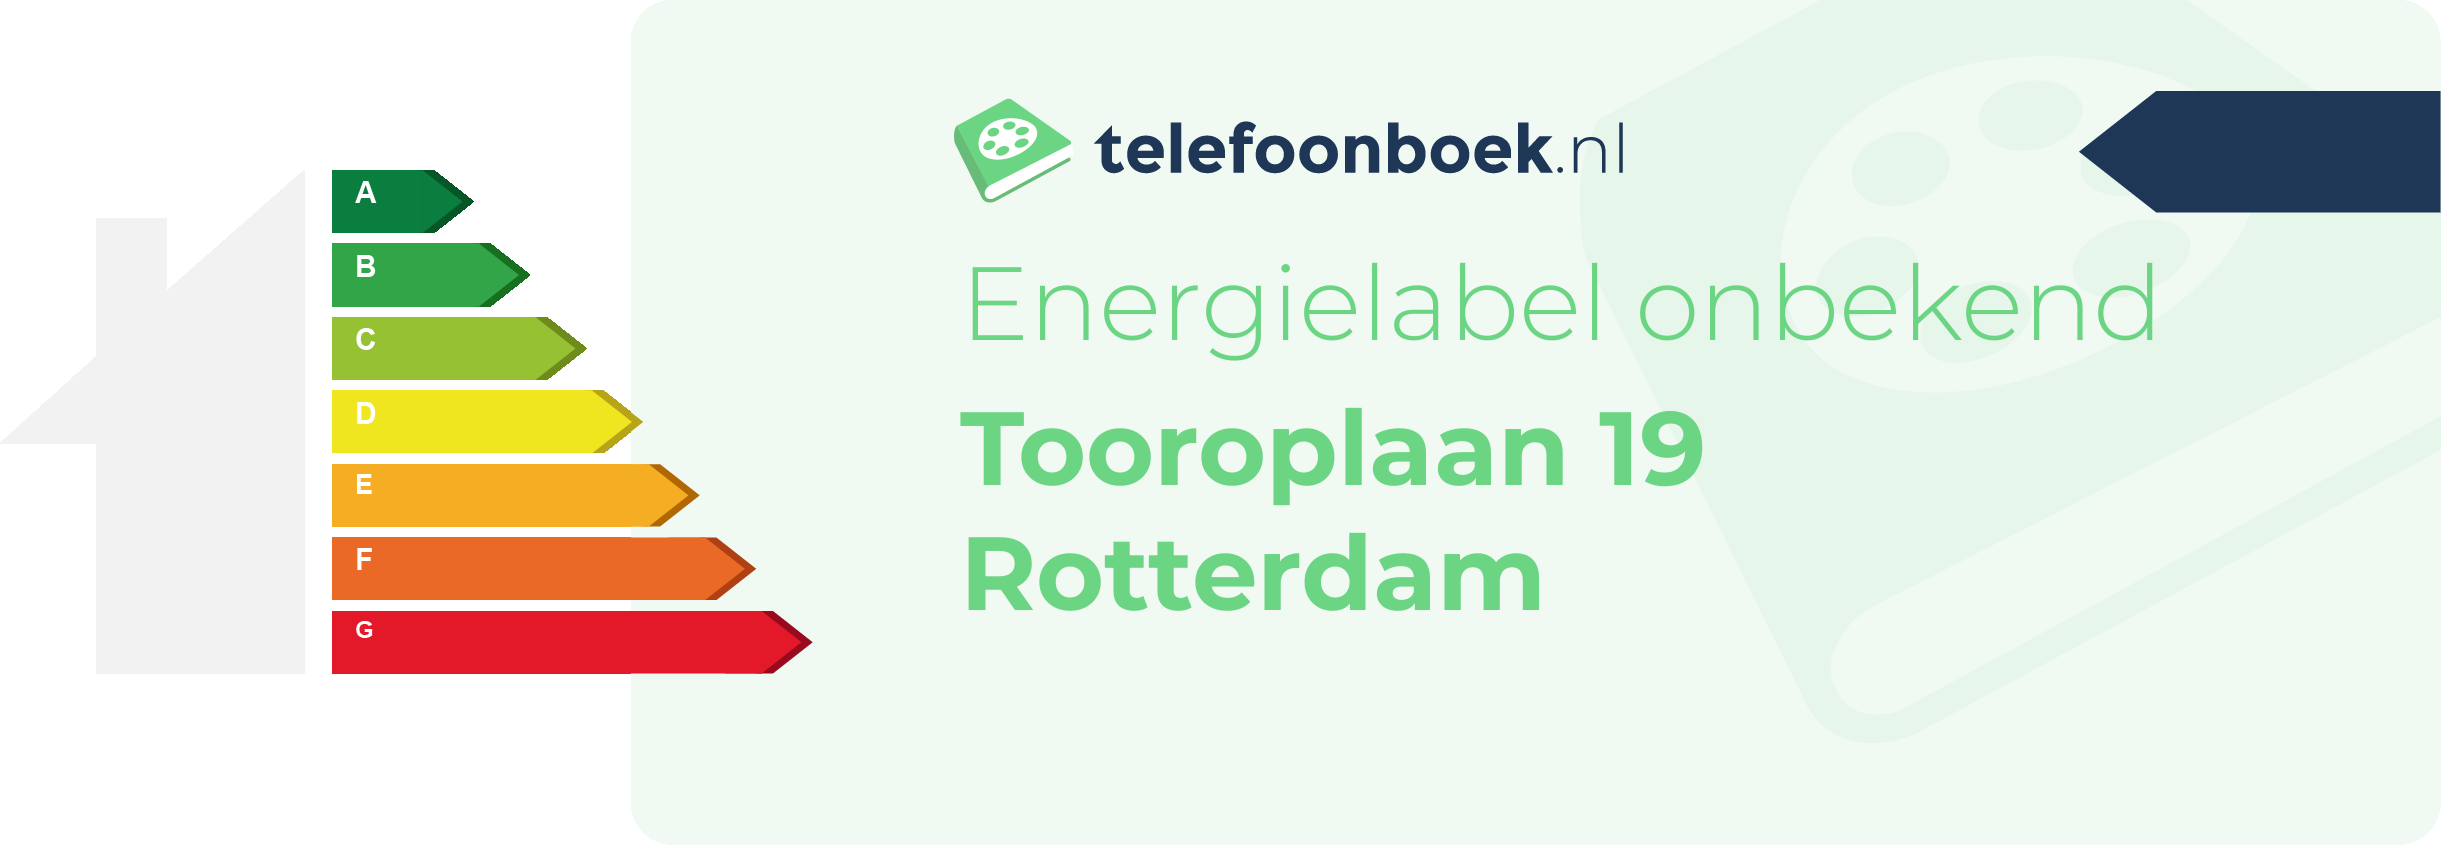 Energielabel Tooroplaan 19 Rotterdam